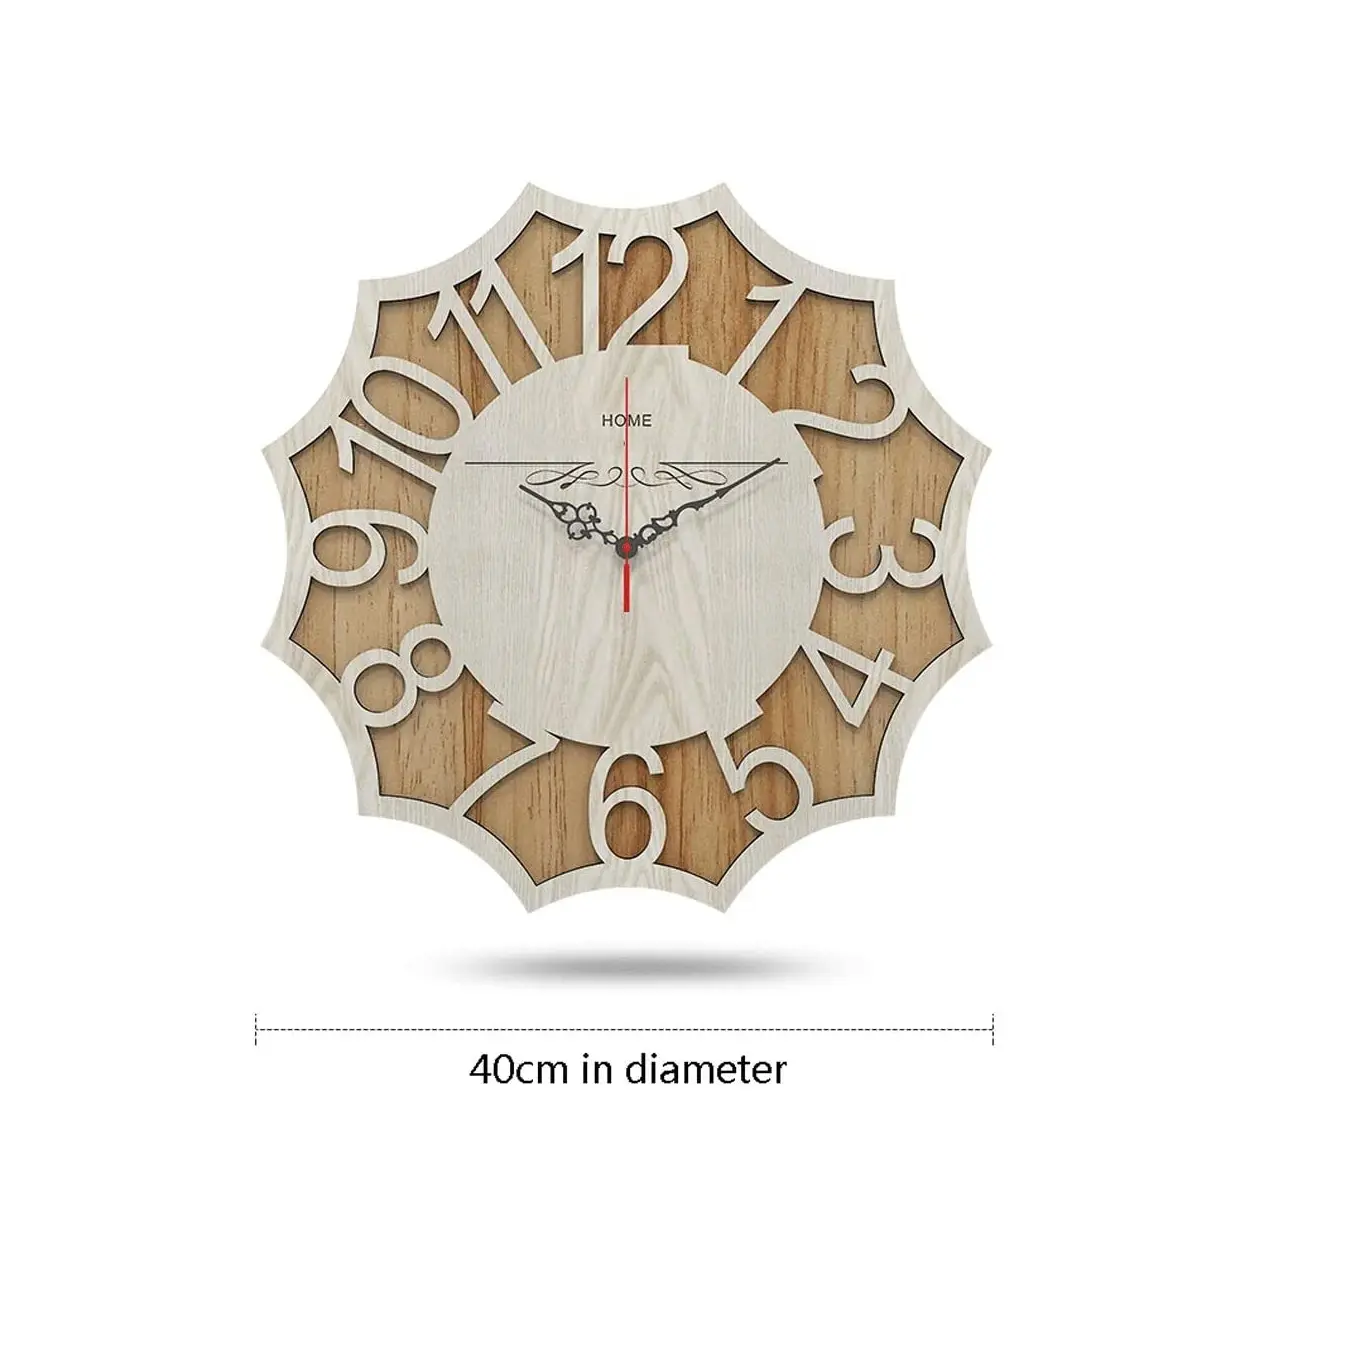 Nuovo arrivo orologio da parete in legno decorativo da parete bianco e marrone orologi con design unico miglior regalo di anniversario con un prezzo basso dei parassiti